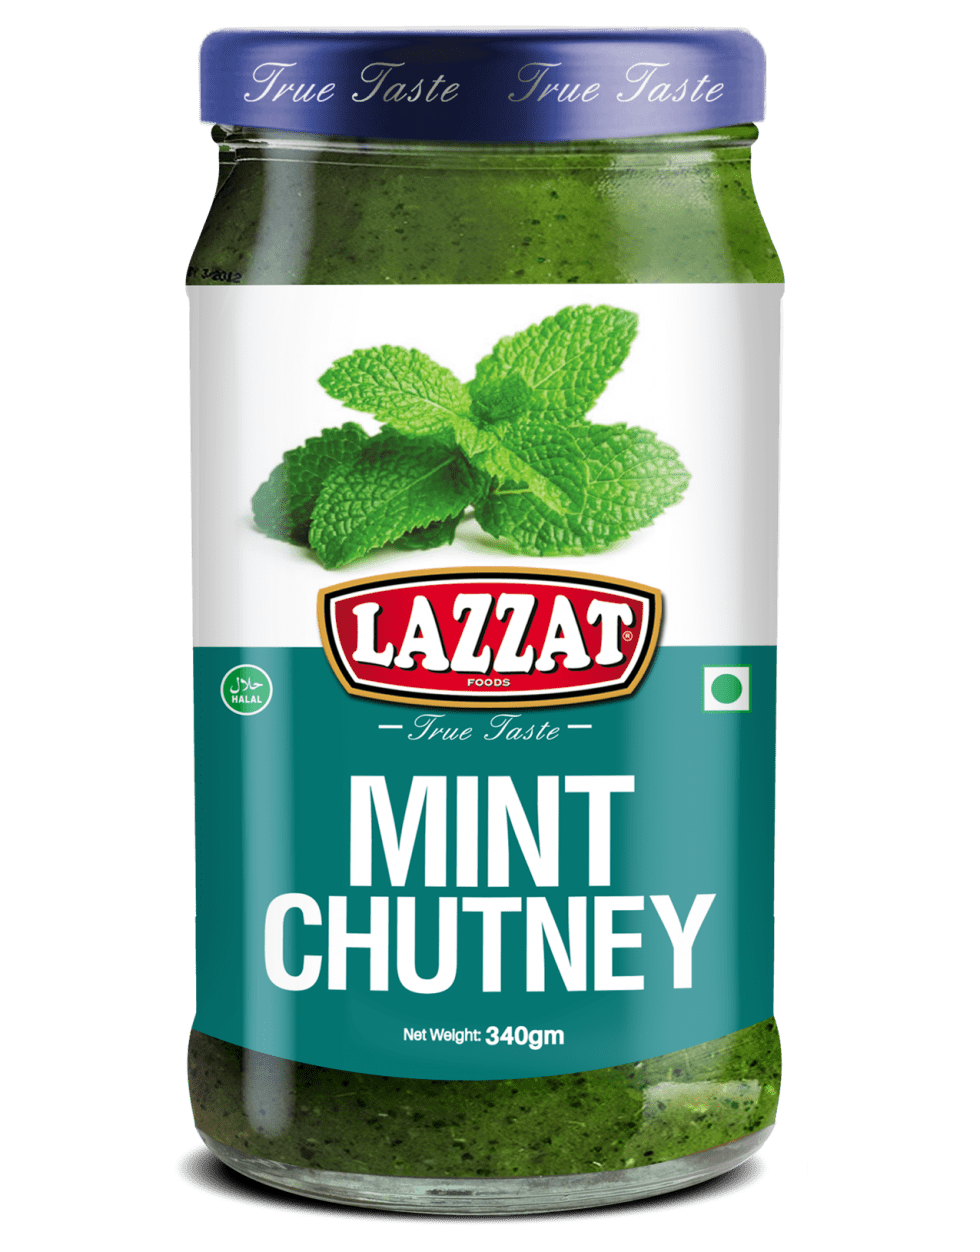 Mint Chutney - LAZZAT FOODS - TRUE TASTE